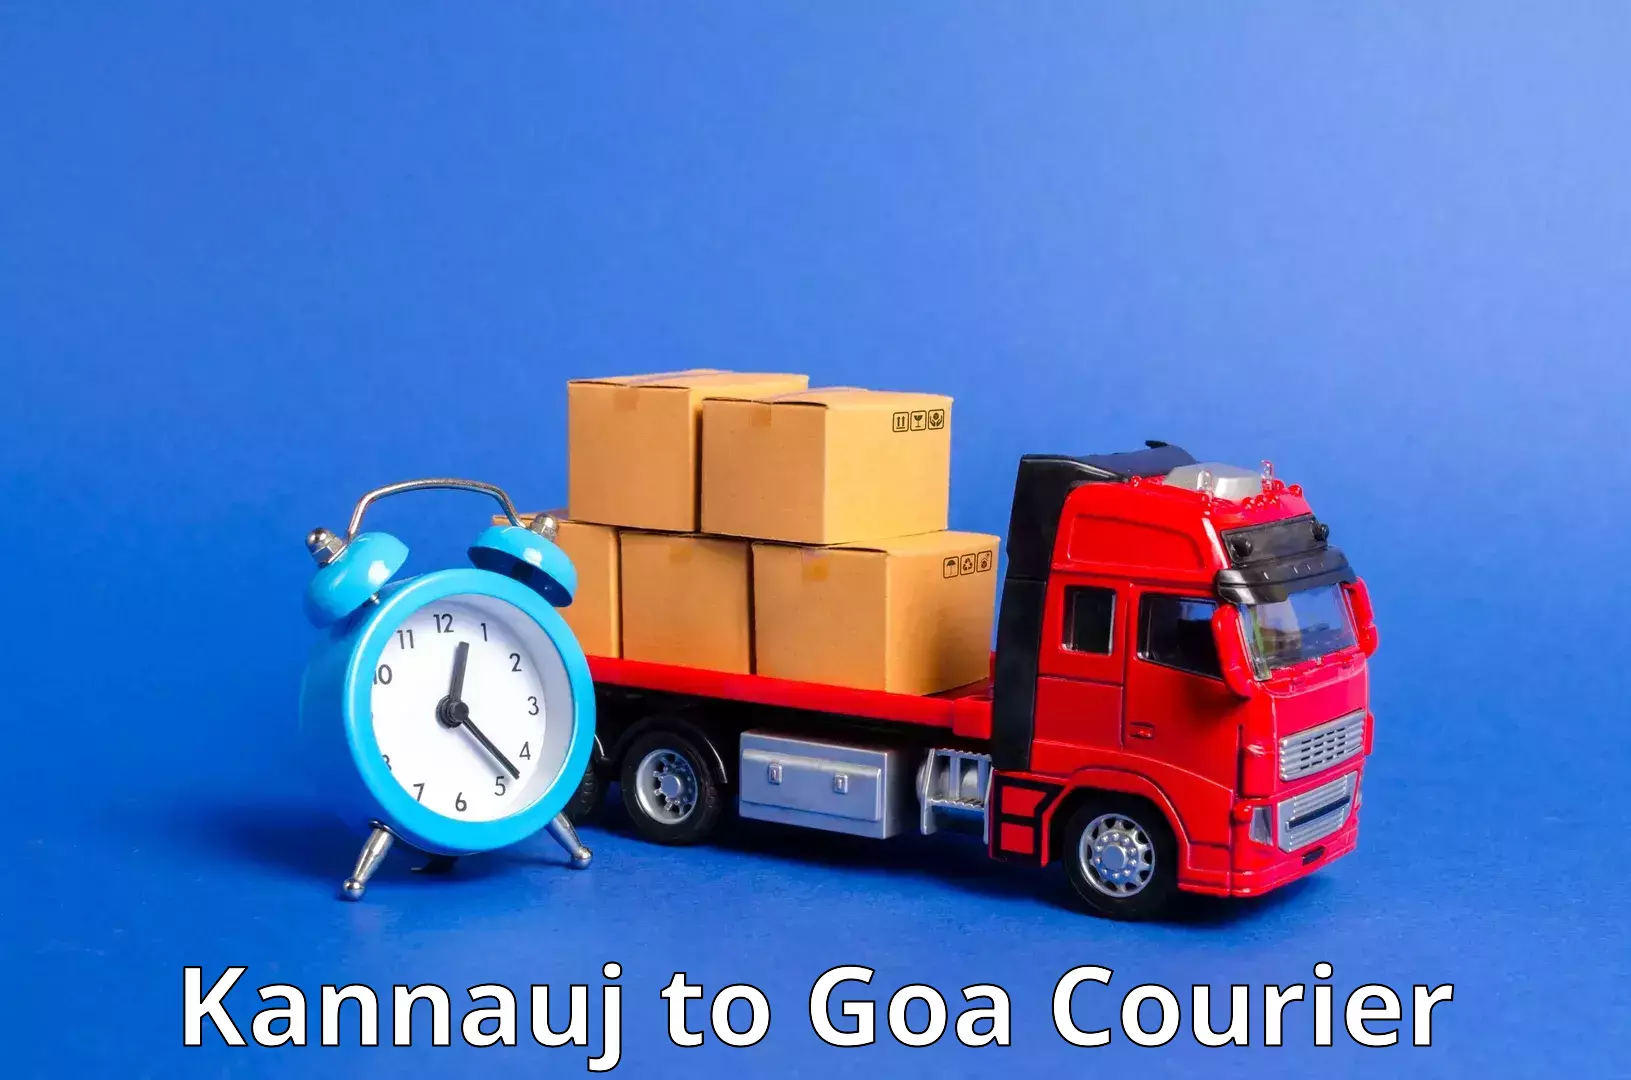 Cargo courier service Kannauj to Vasco da Gama